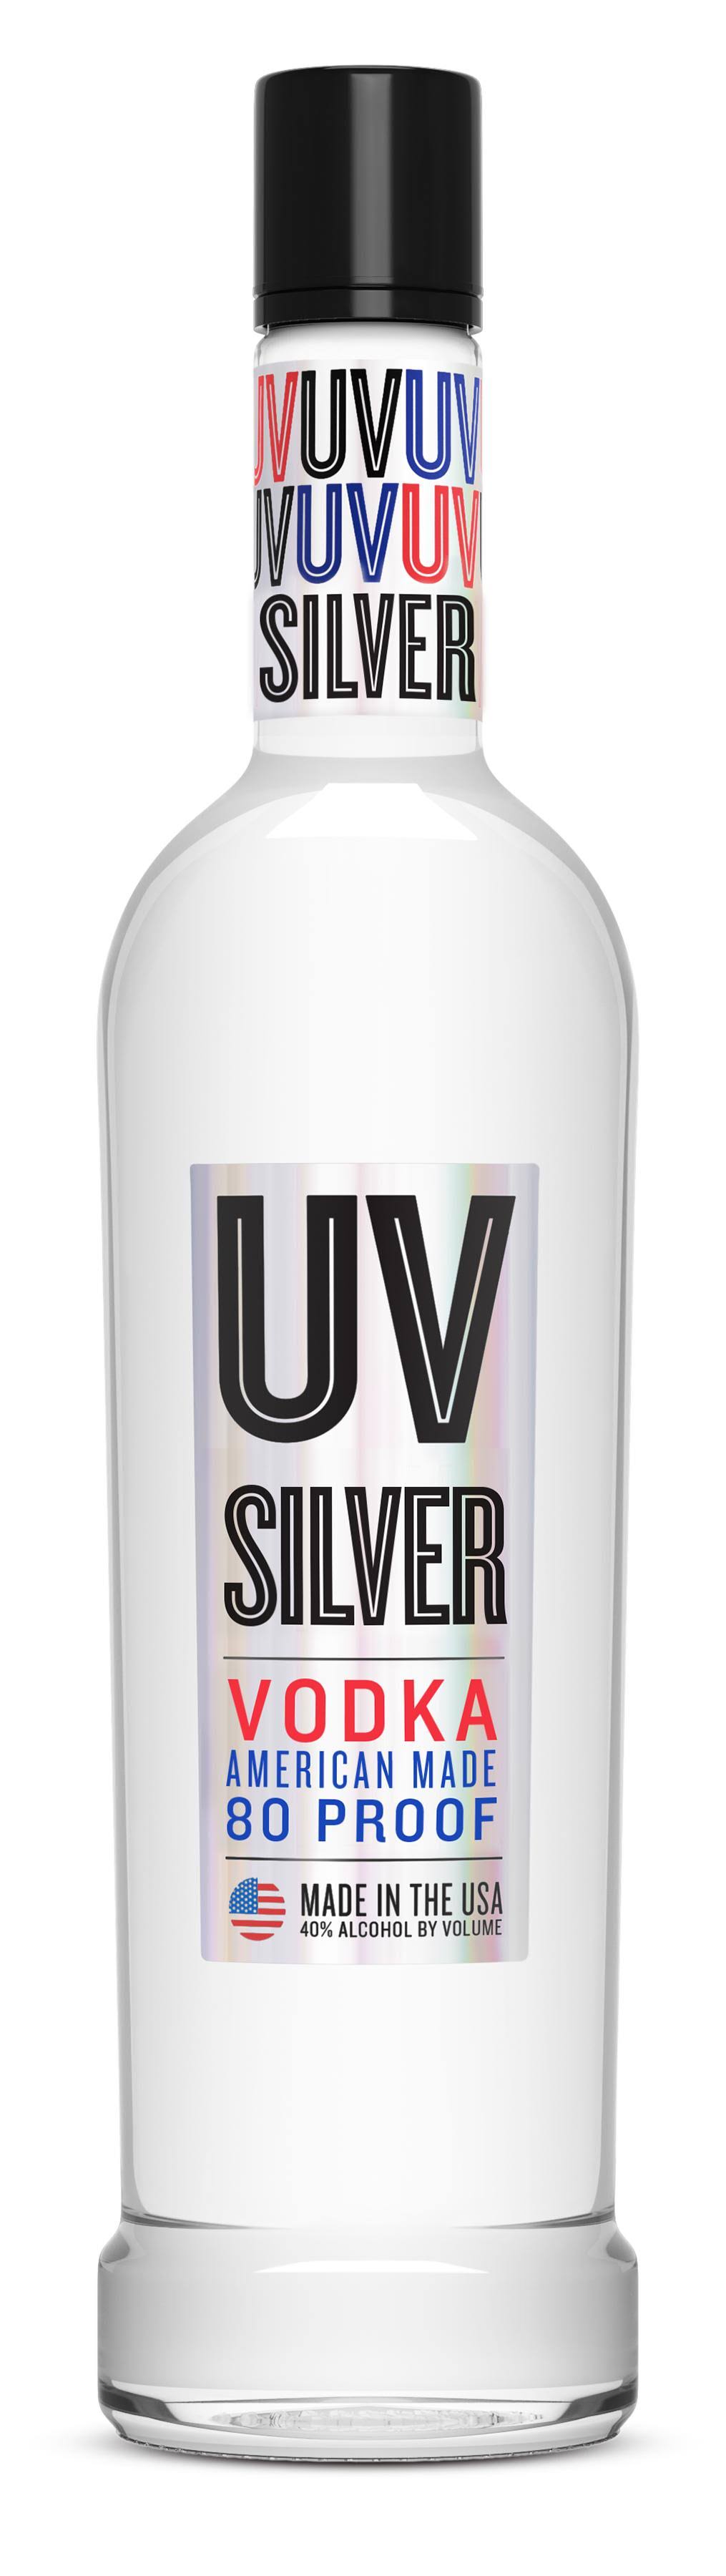 Uv Vodka